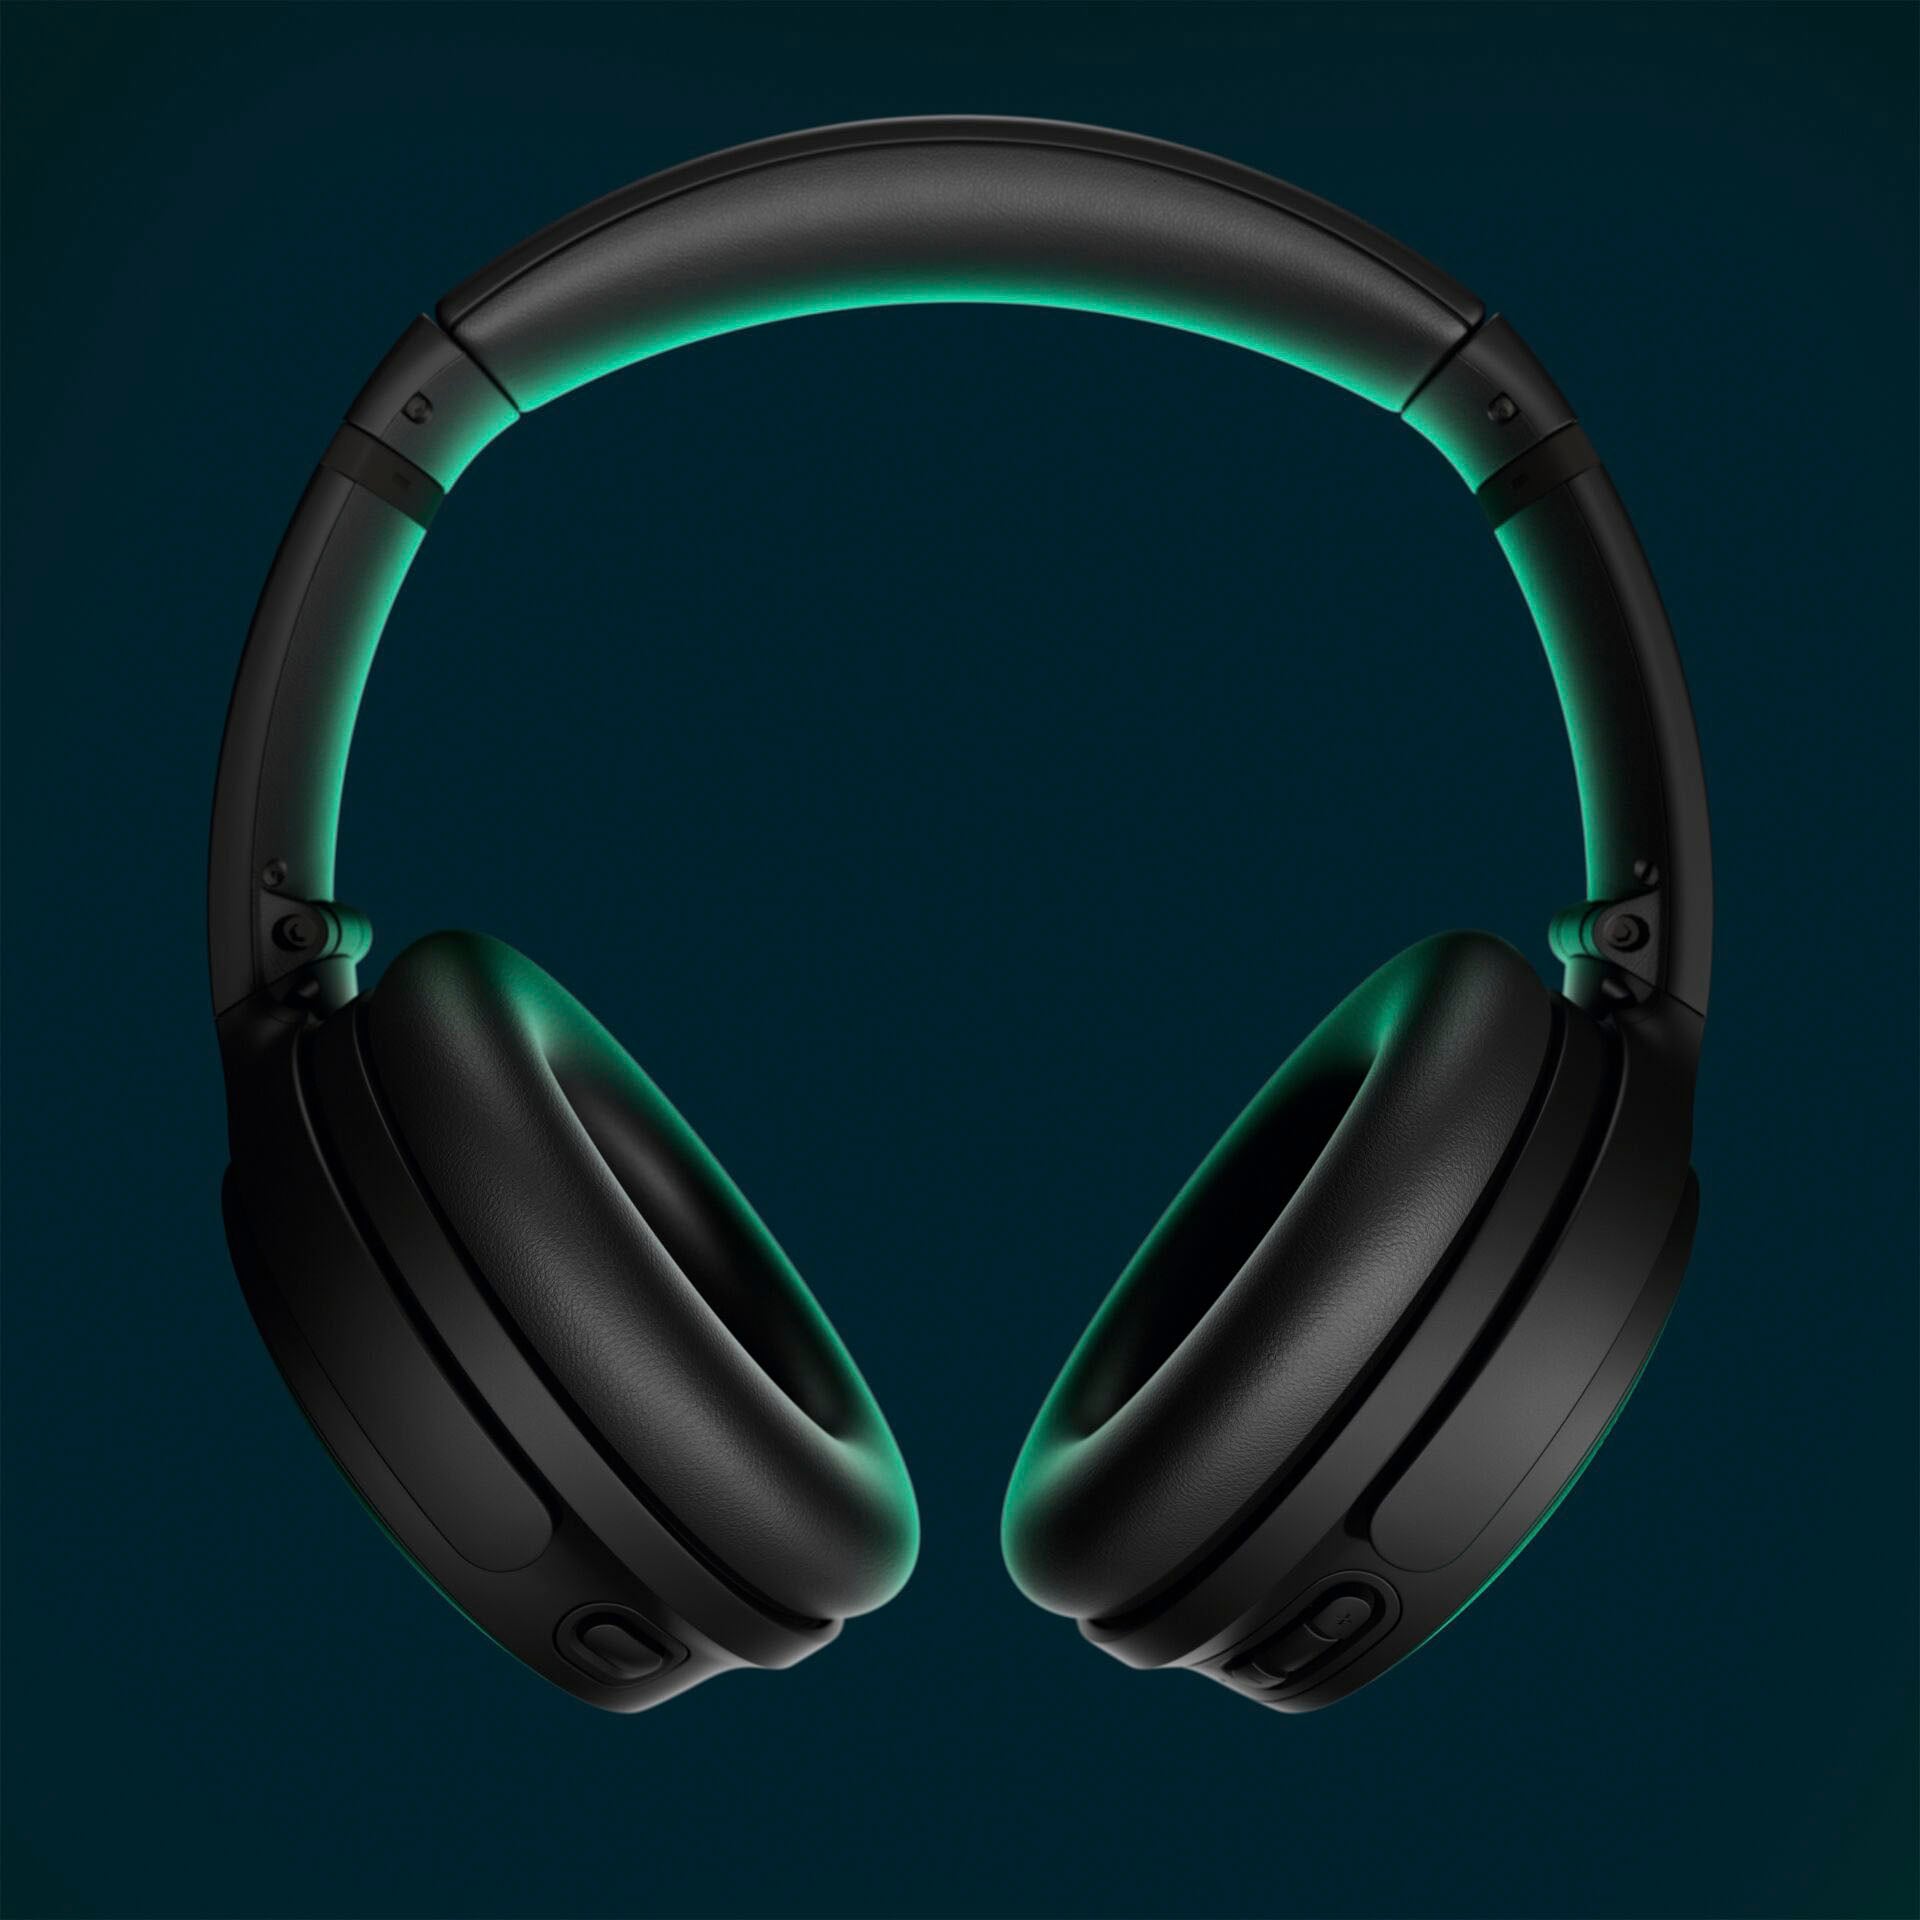 Bose Over-Ear-Kopfhörer »QuietComfort Noise Cancelling Kopfhörer«, Bluetooth, Rauschunterdrückung, 2 Modi, Anpassbare Einstellungen, Audiokabel mit integriertem Mikrofon